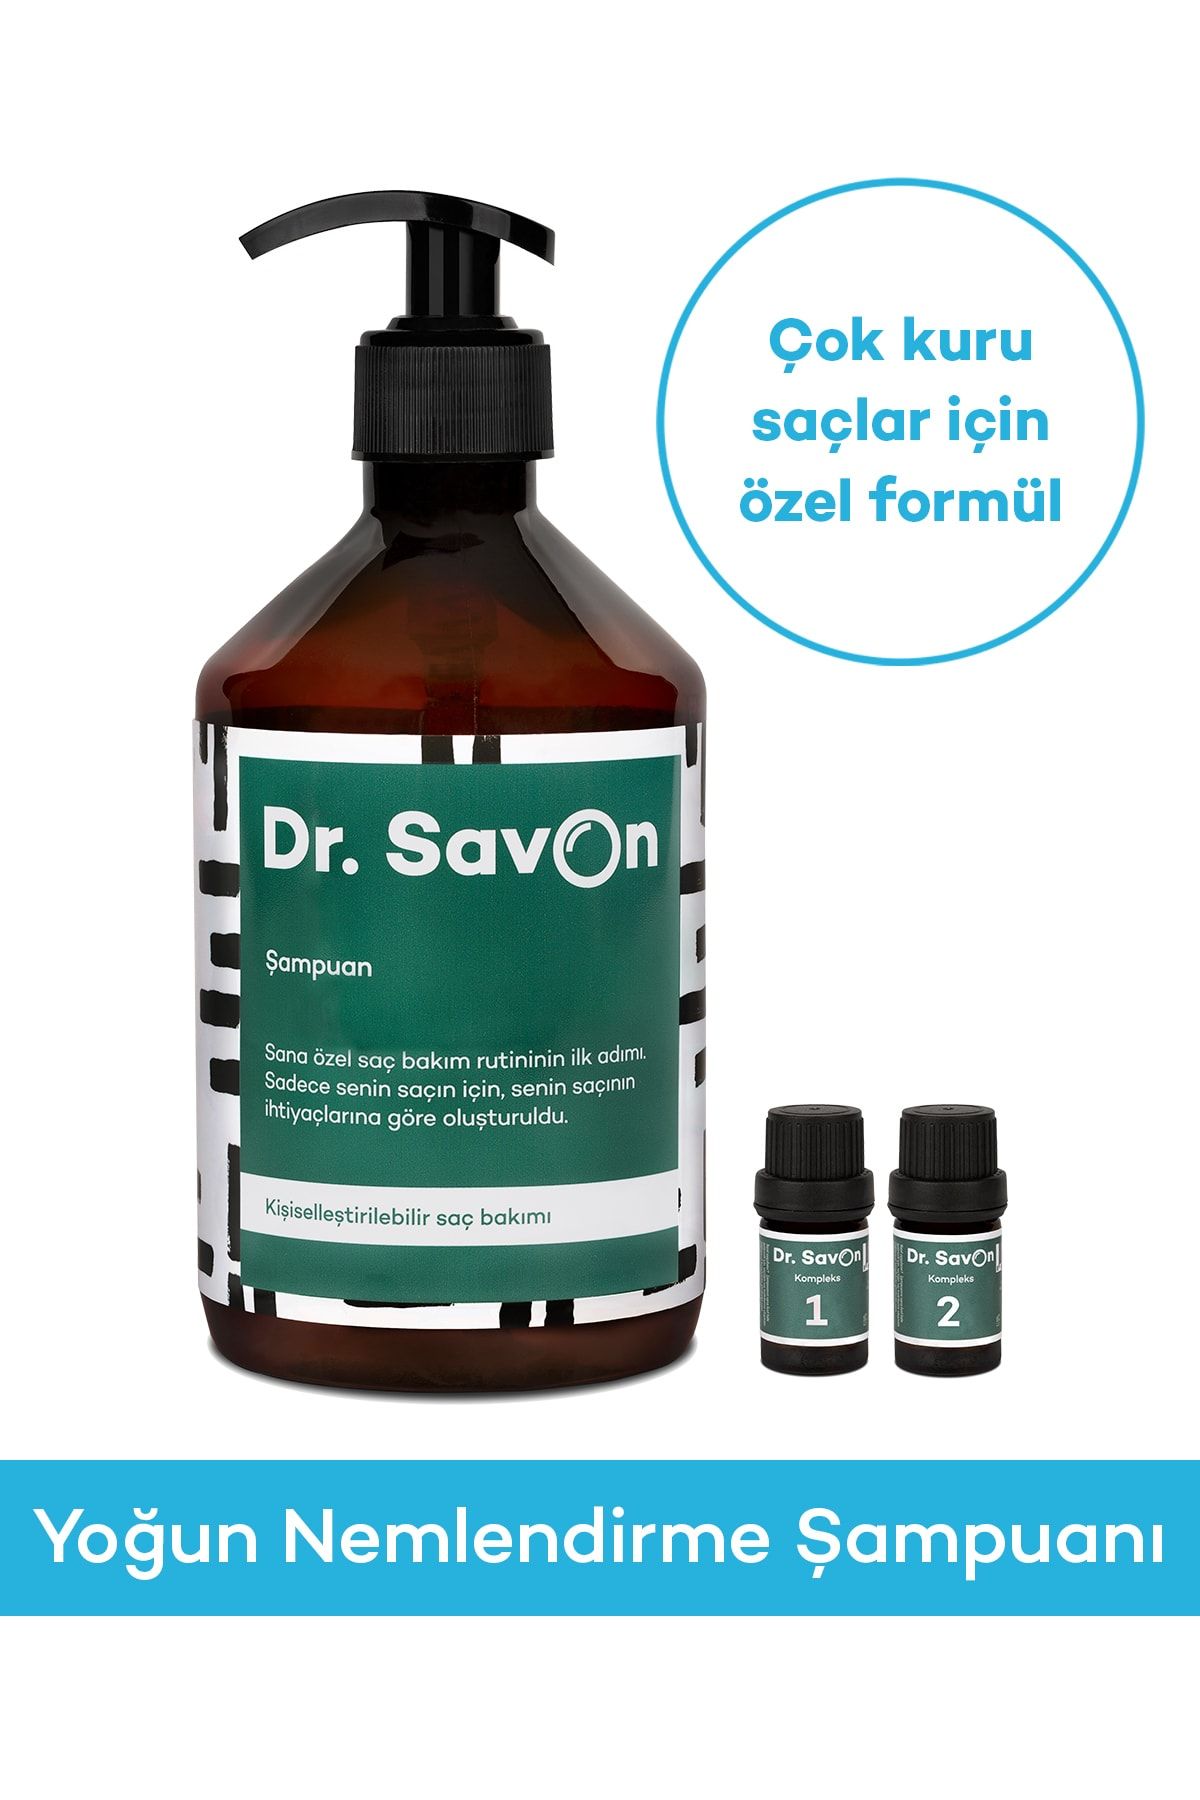 Dr. Savon Yoğun Nemlendirme Şampuanı